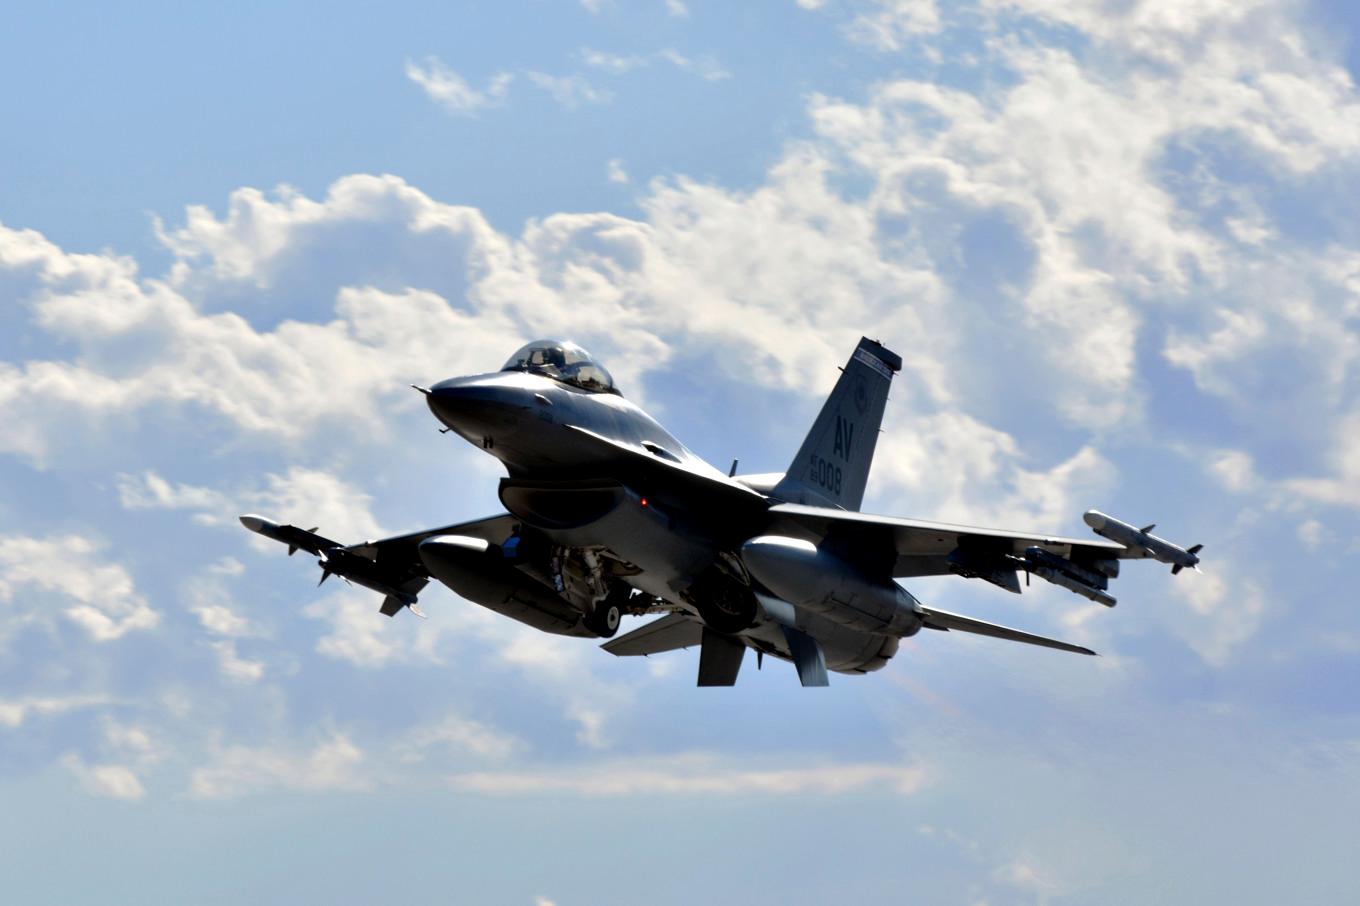 Turkiet får köpa 40 nya F-16 stridsflygplan av USA efter ratificeringen av Sveriges Natoansökan. Foto: Staff Sgt. Heather Ley via AP/TT